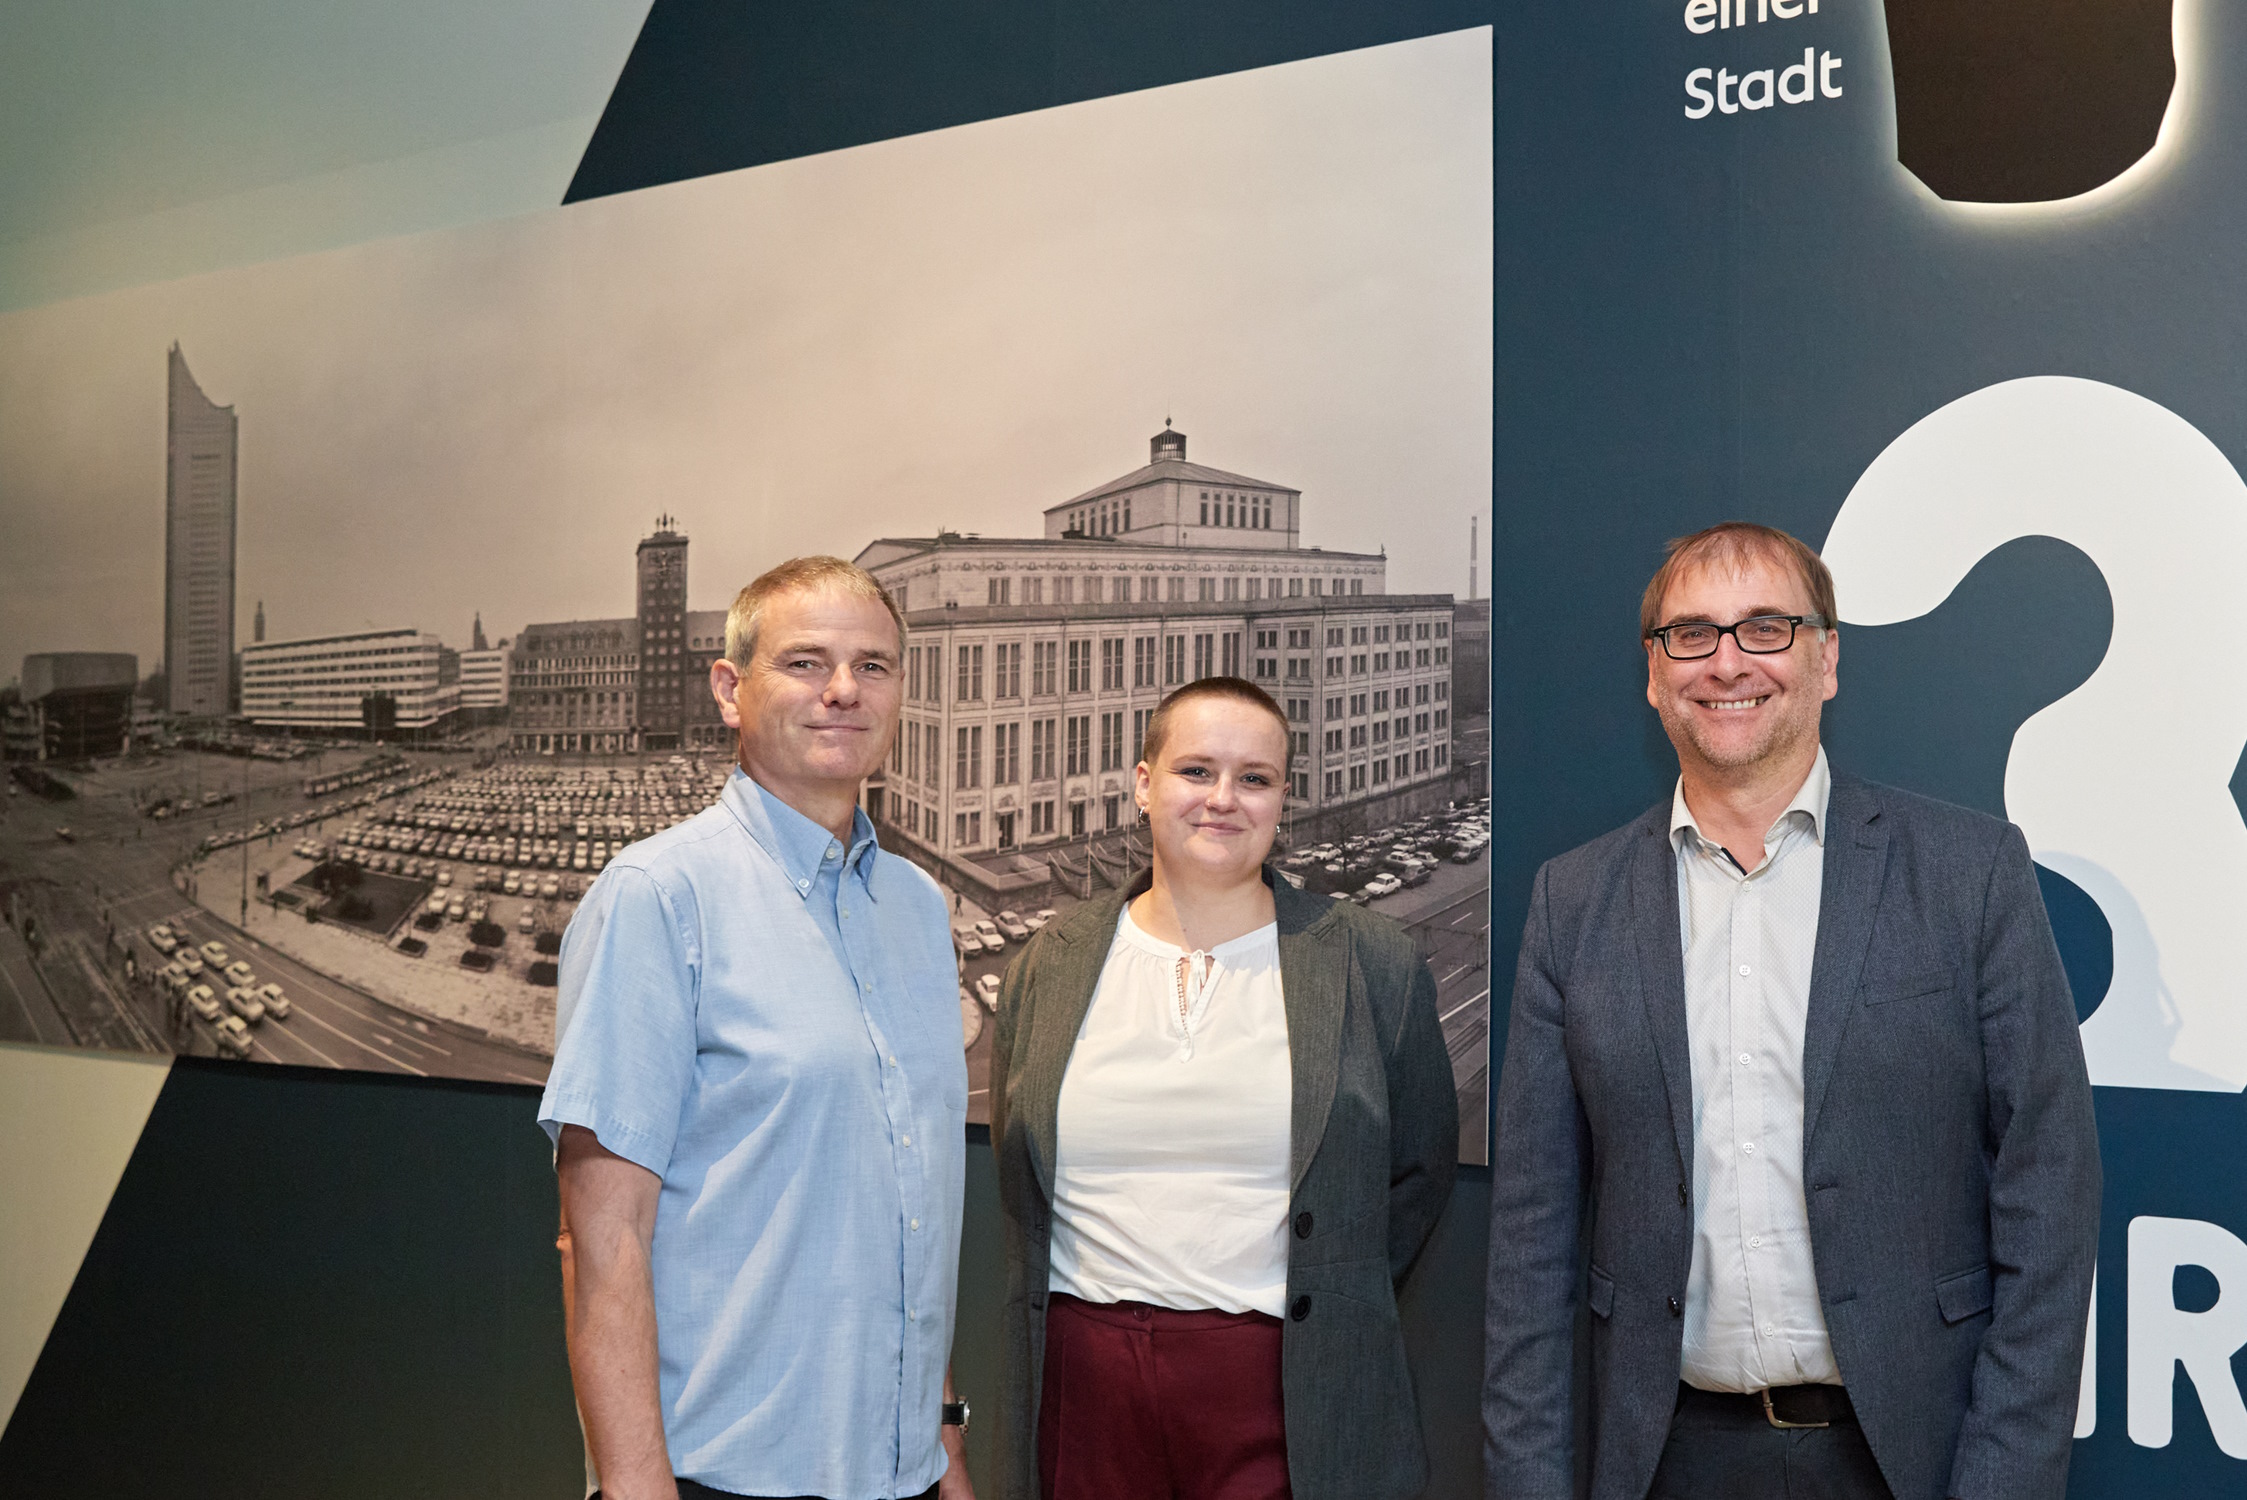 Bertram Kober, Friederike Degner und Dr. Anselm Hartinger in der Ausstellung. Foto: PUNCTUM, Alexander Schmidt